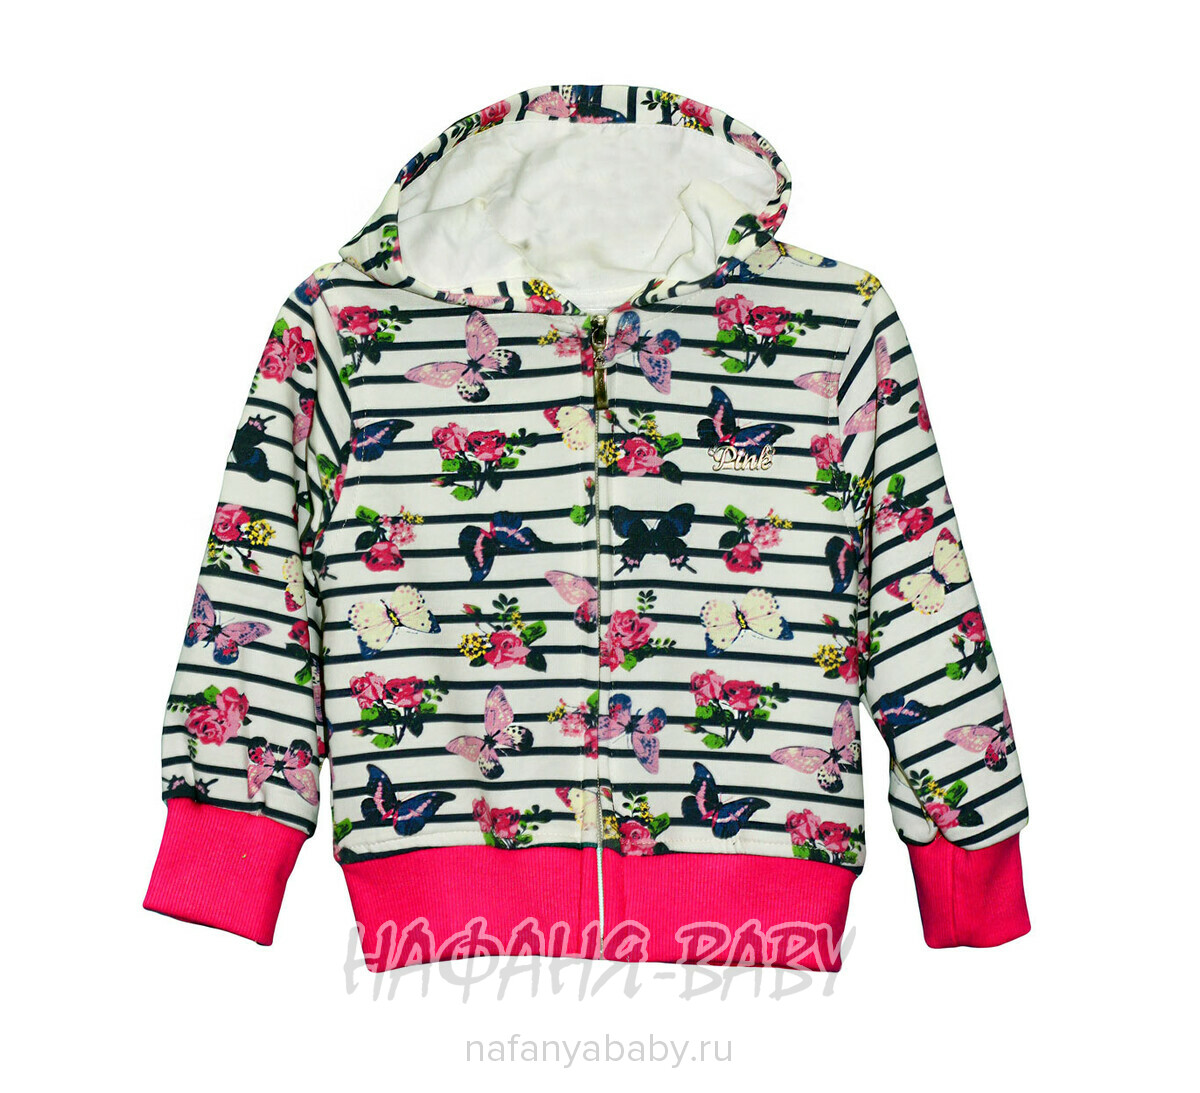 Детская кофта с капюшоном PINK, купить в интернет магазине Нафаня. арт: 5074.